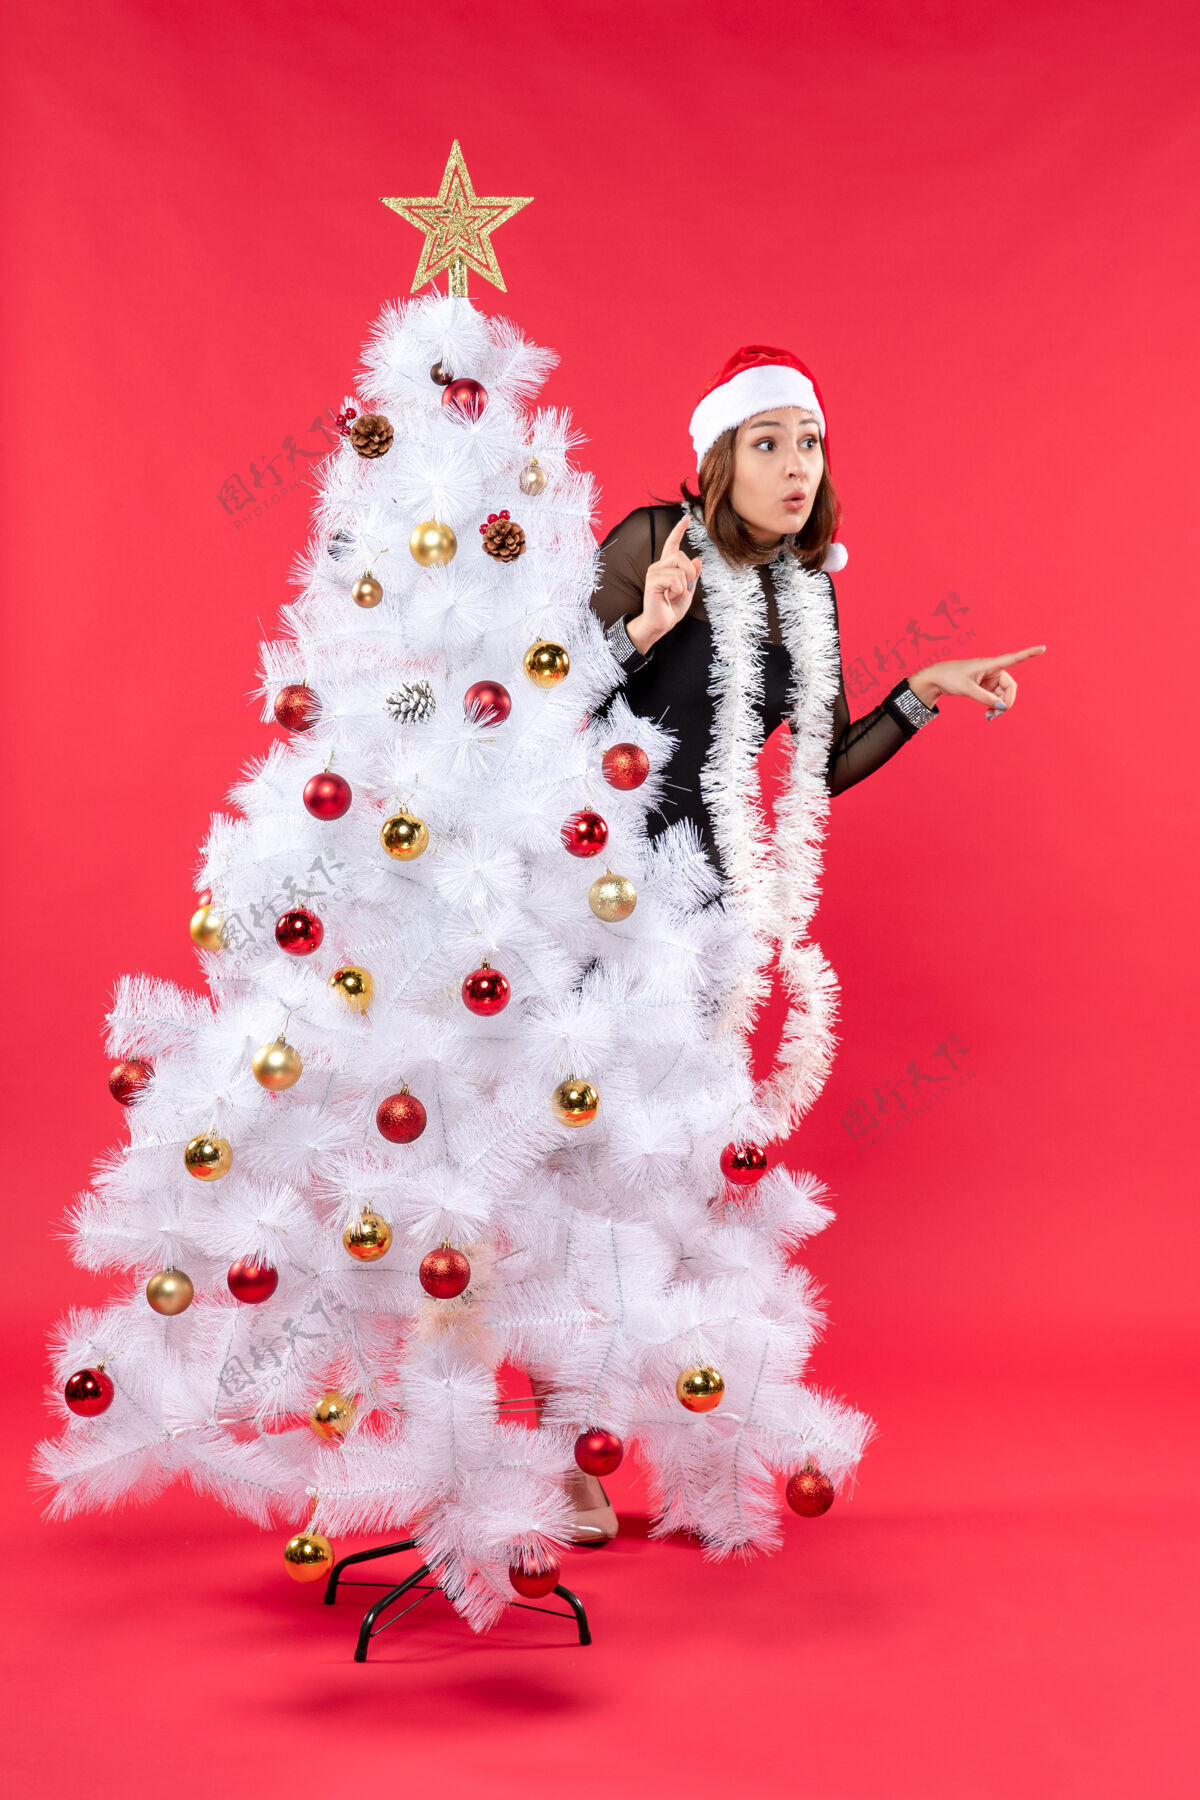 帽子圣诞心情与惊喜美丽的女孩在一个黑色礼服与圣诞老人的帽子隐藏在新年树股票照片庆祝衣服圣诞老人